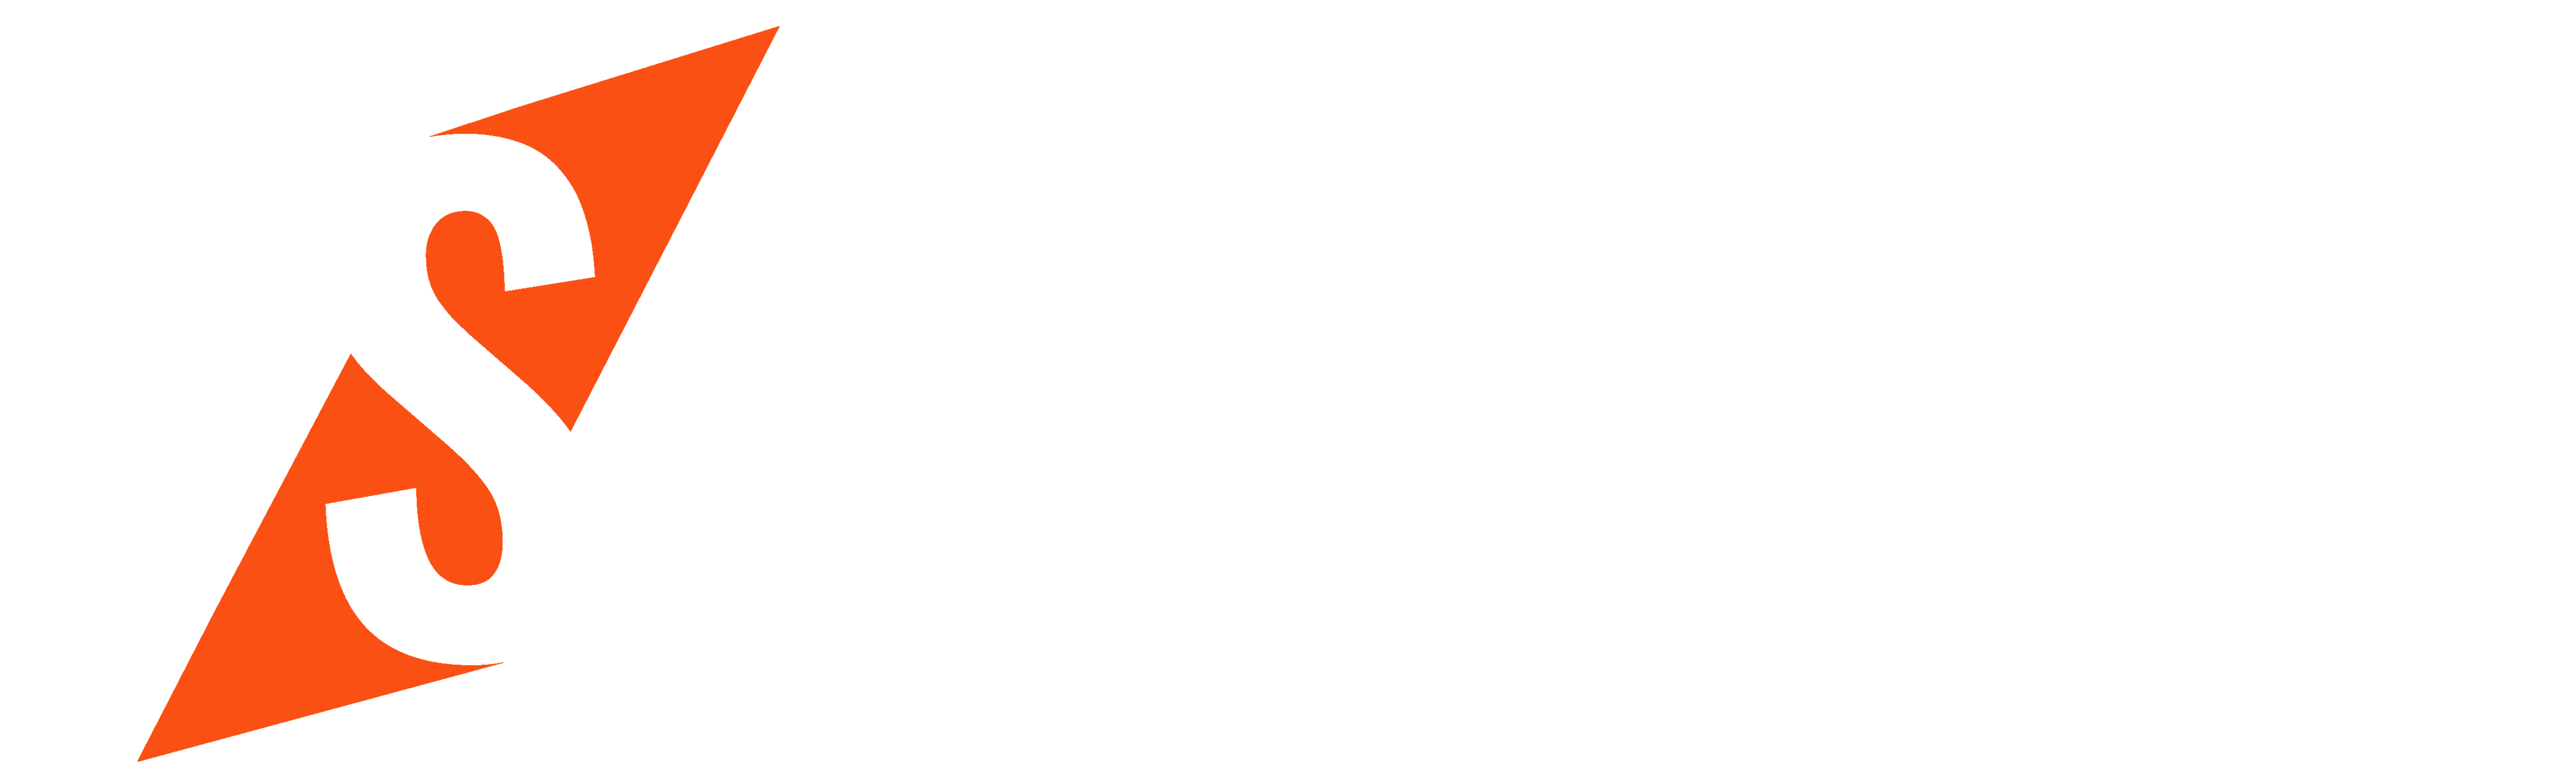 Slidety